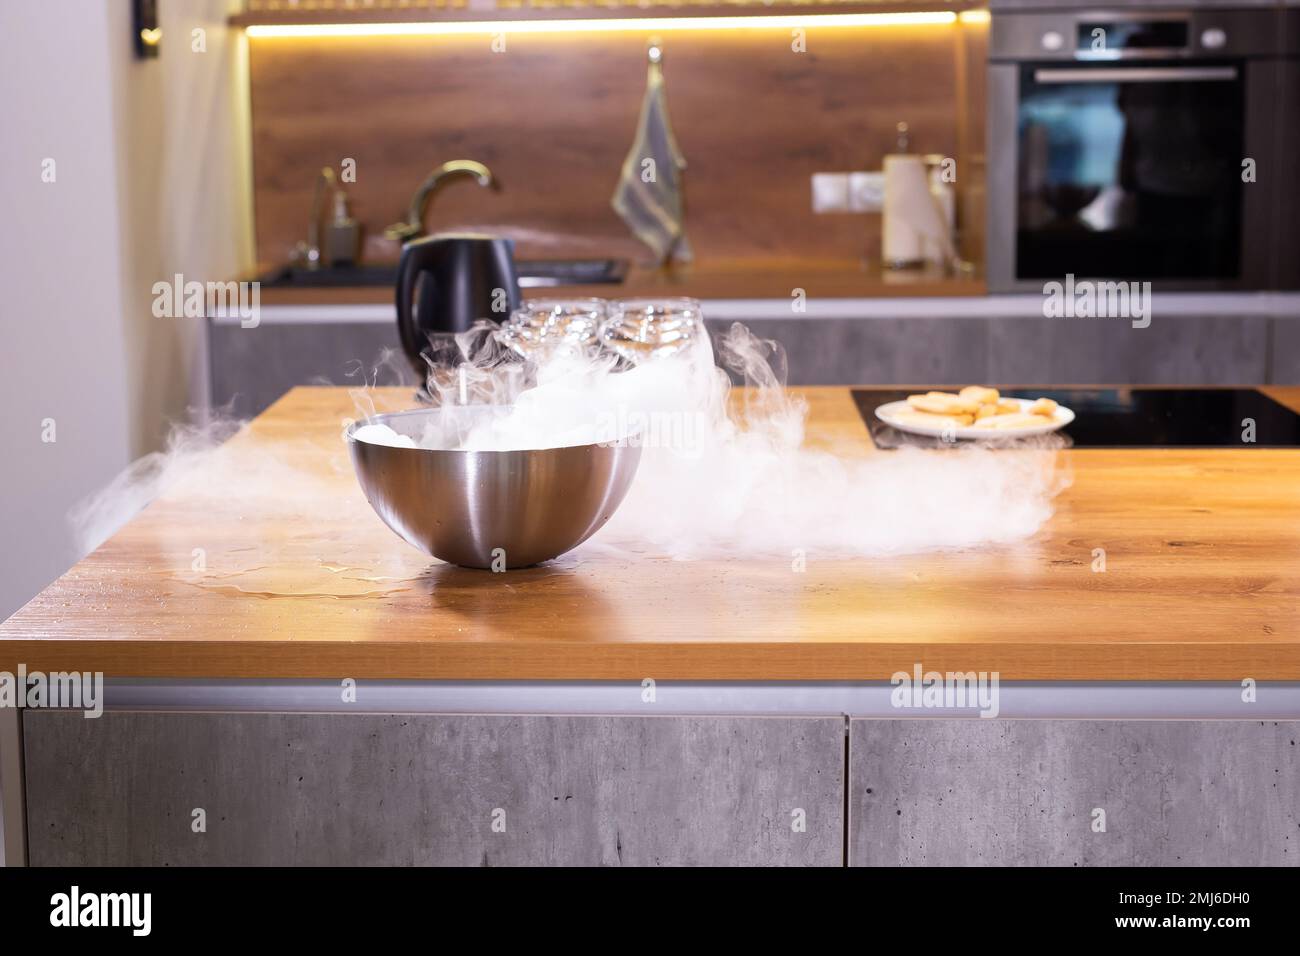 Hielo seco de vapor de humo en un recipiente en la cocina